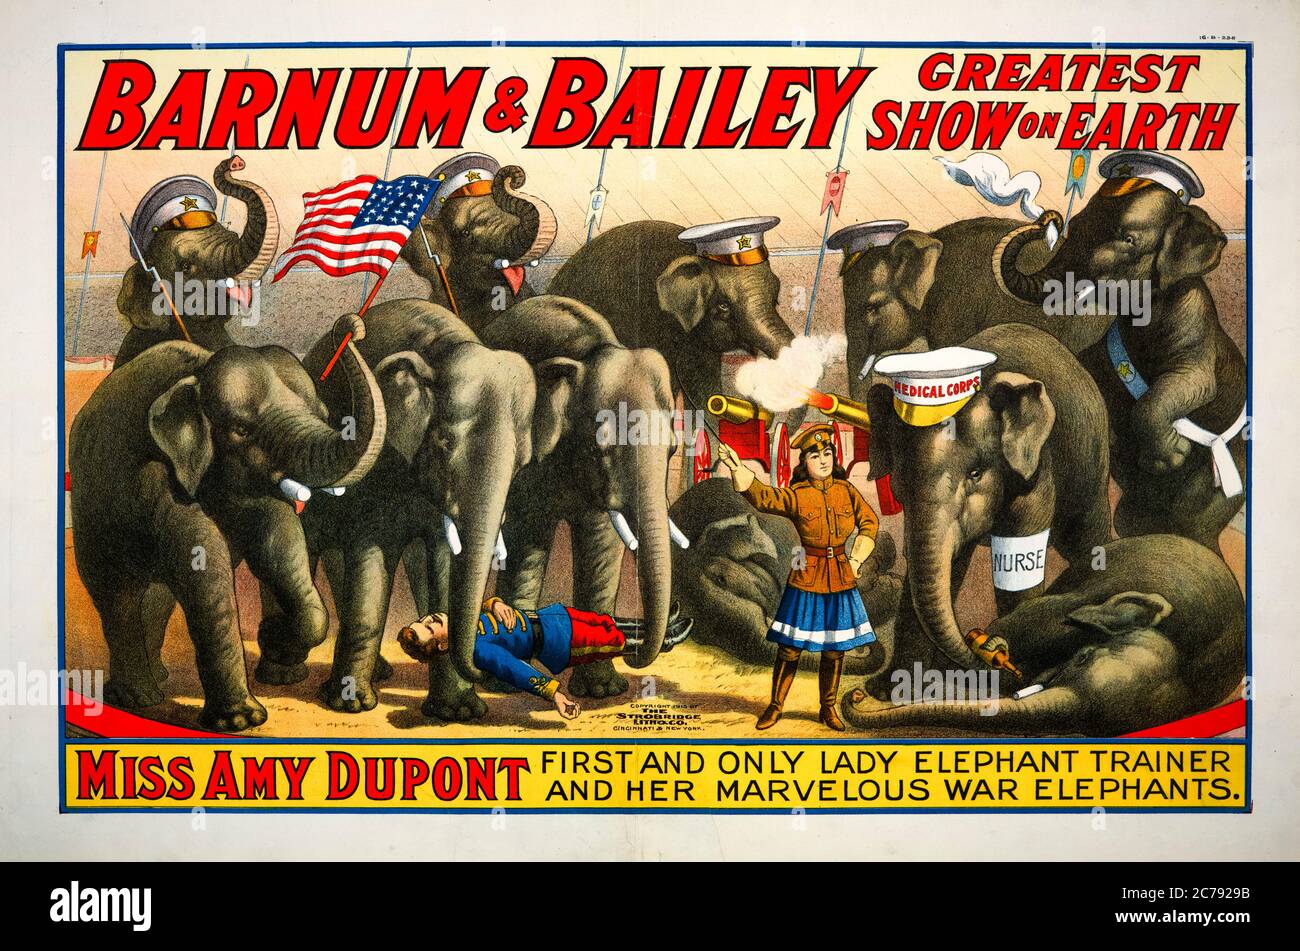 Barnum and Bailey, el mejor espectáculo de la Tierra, póster de circo, Srta. Amy Dupont, primera y única entrenadora de elefantes y sus maravillosos elefantes de guerra, póster, 1915 Foto de stock